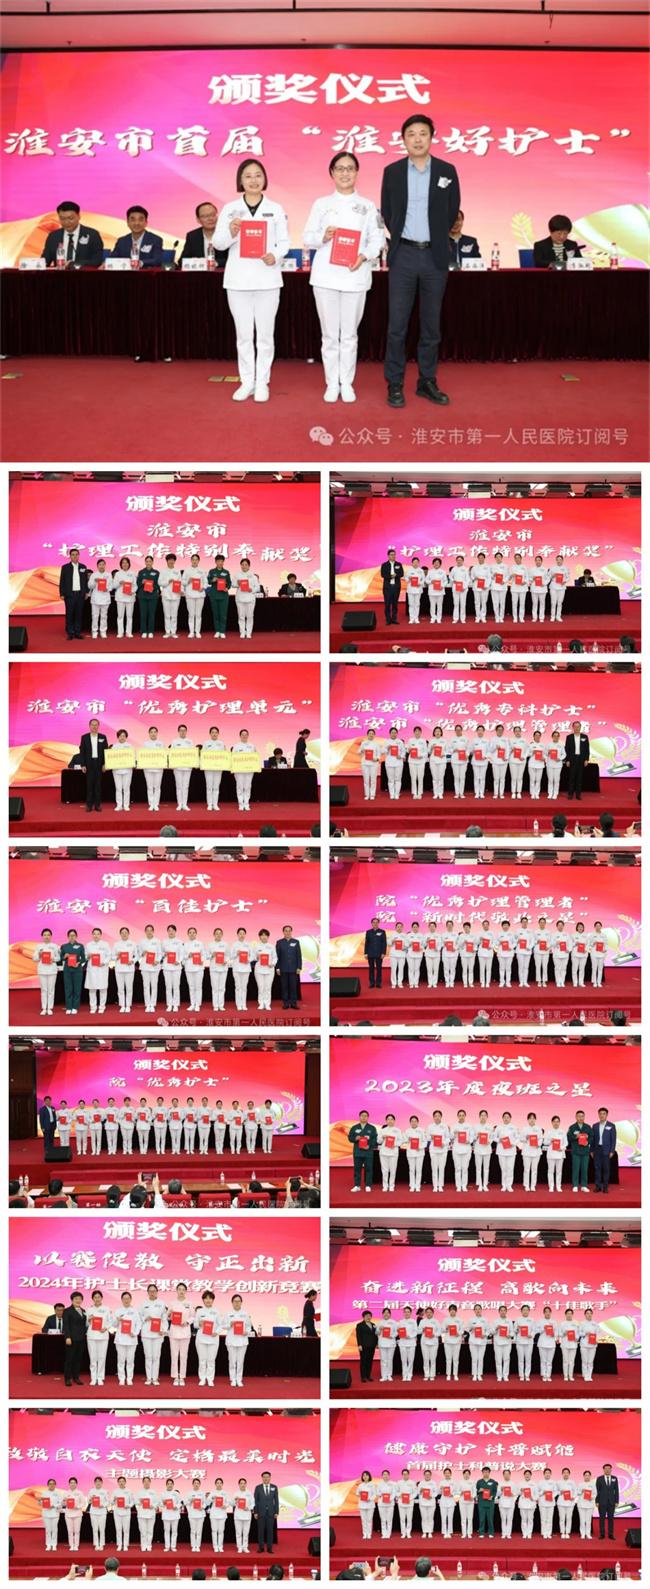 发展护士队伍 优化护理服务 淮安市一院隆重举办5.12国际护士节庆祝大会